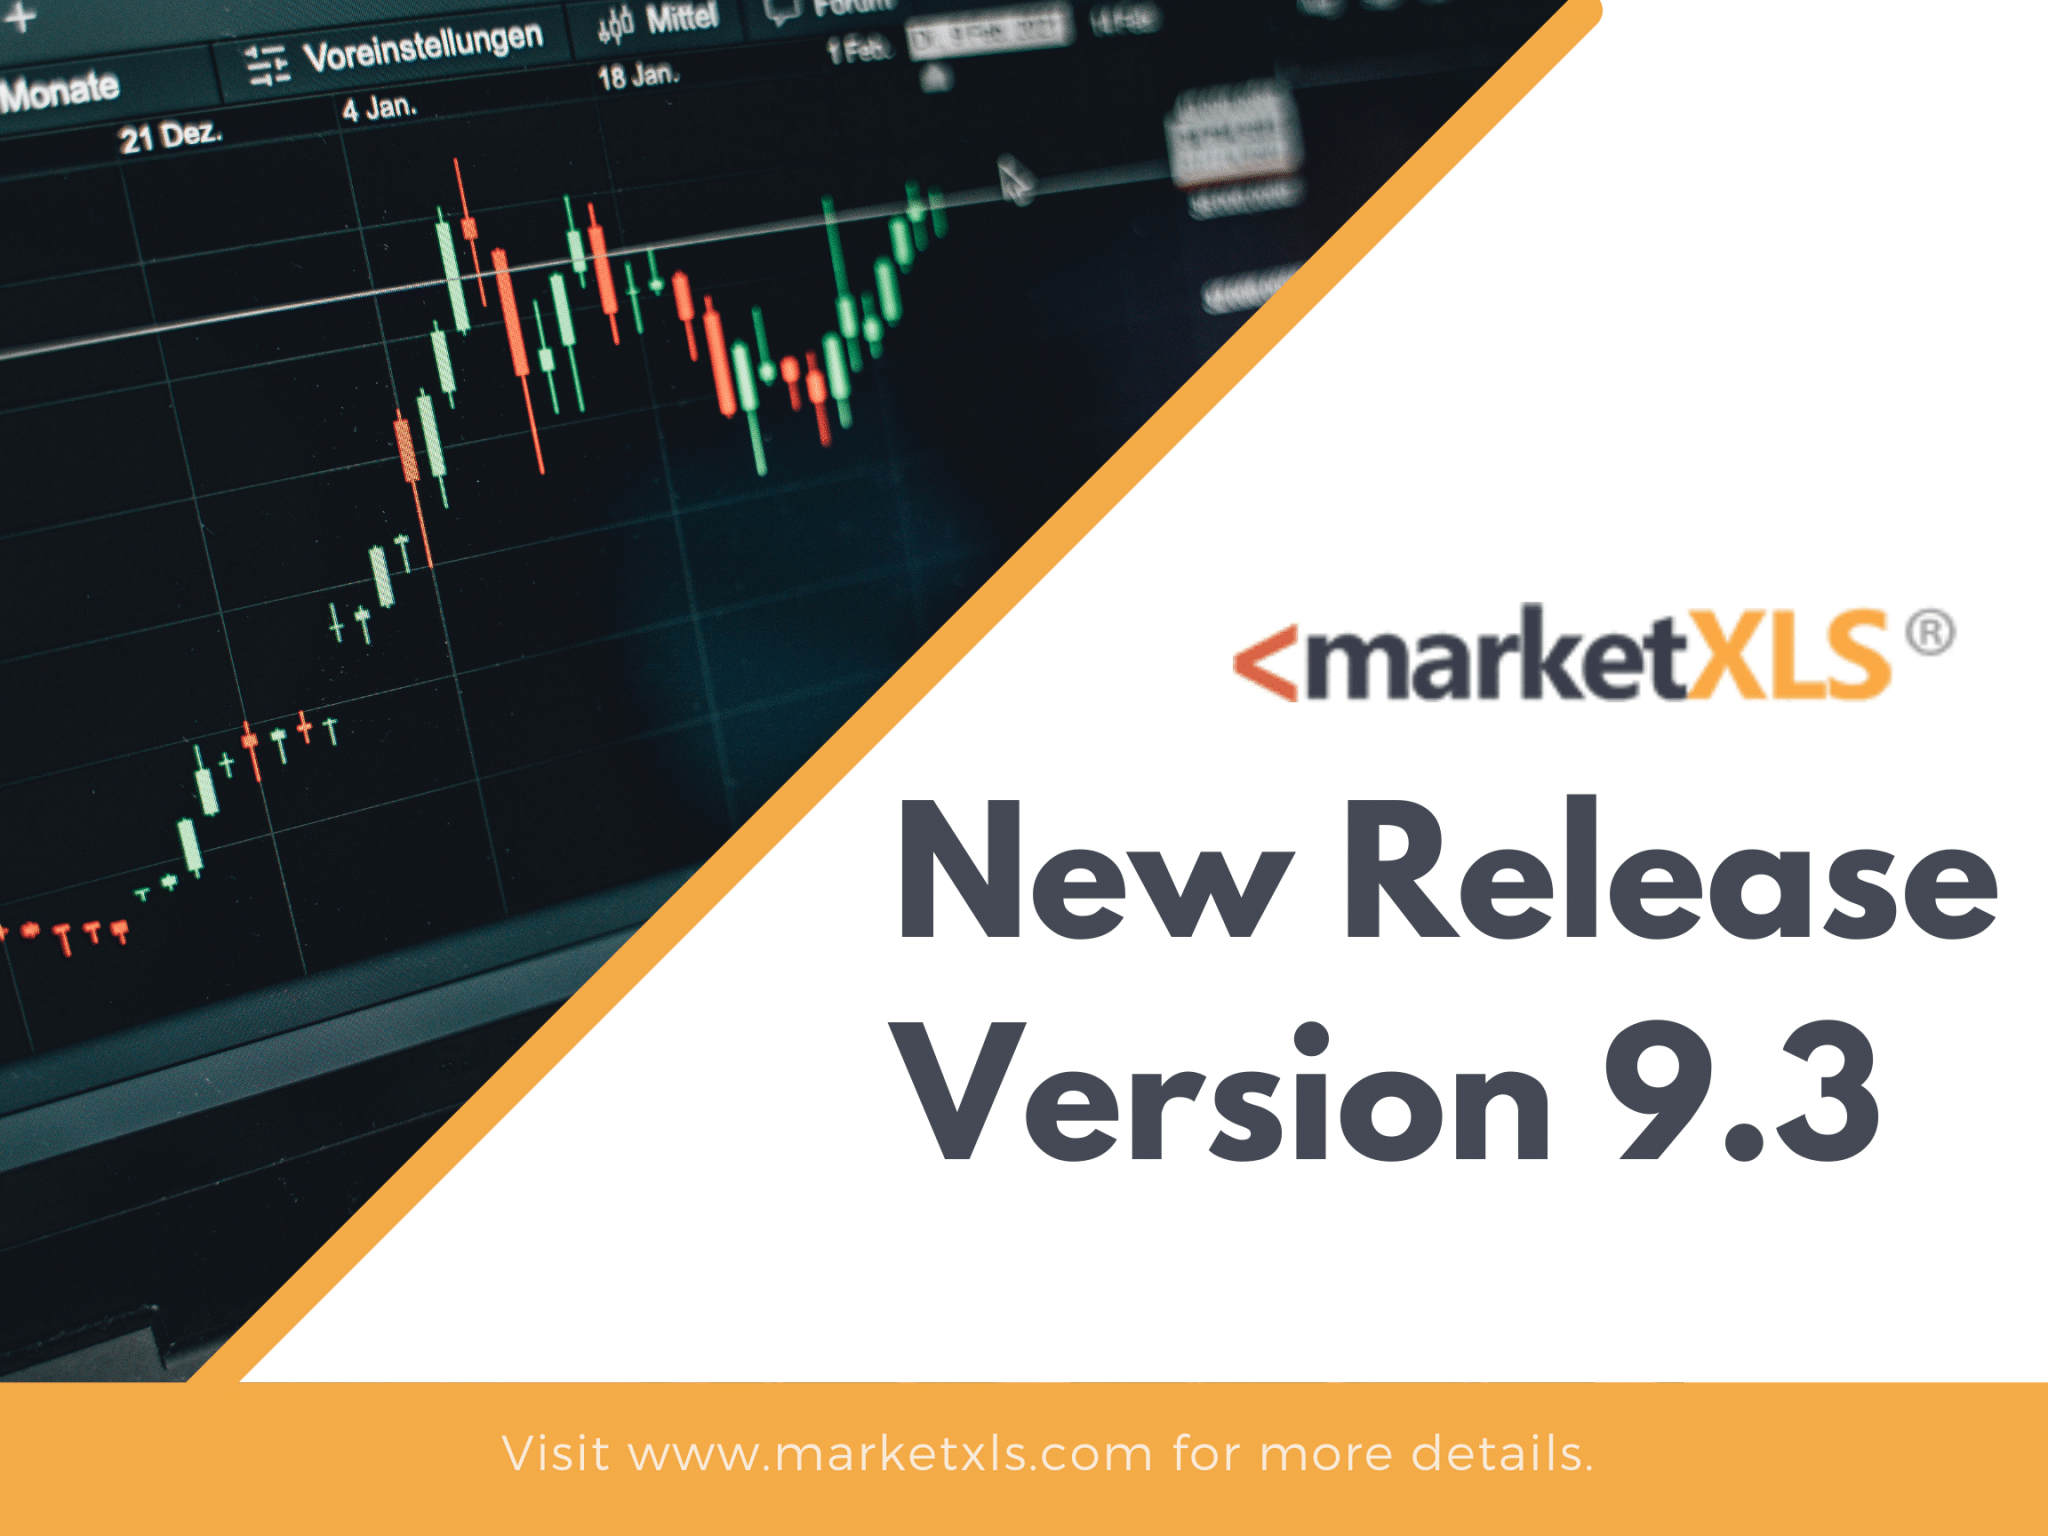 Marketxls New Release Version 9.3 - MarketXLS